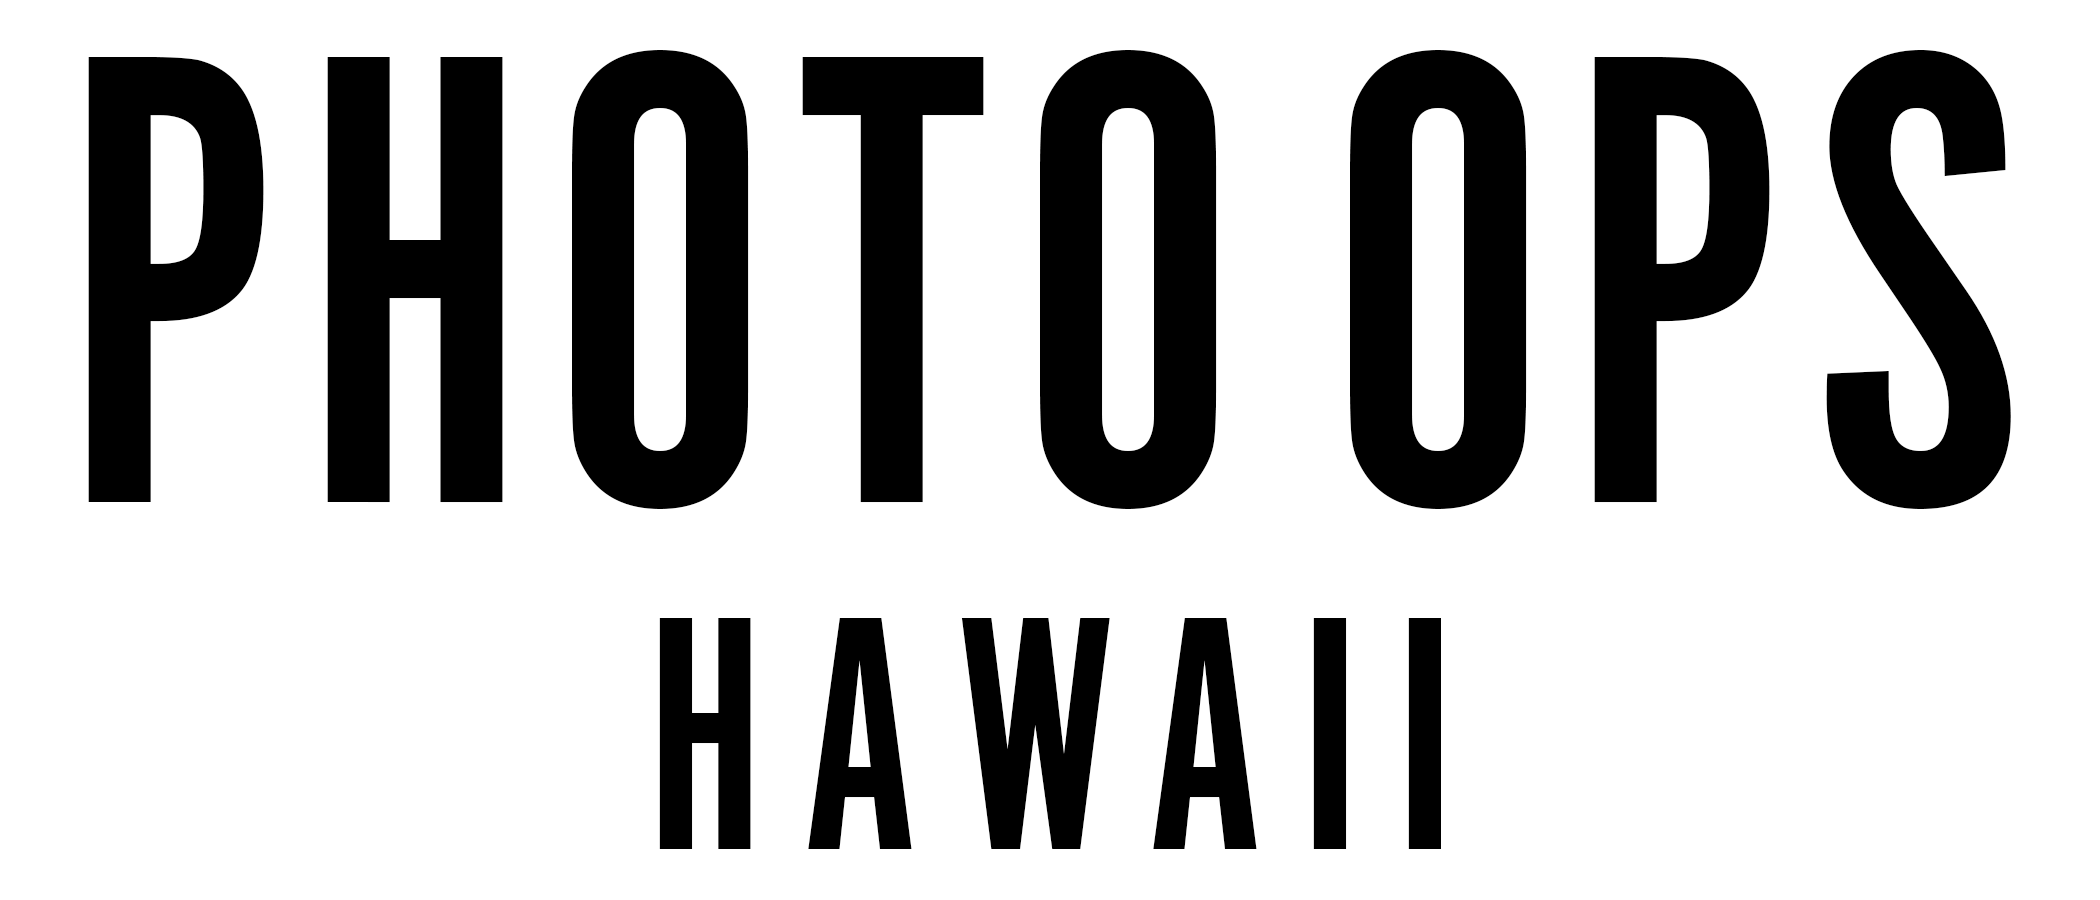 Photo Ops Hawaii | Photo Booth Hawaii - Hawaii Photo Booth - Event Photographer Hawaii - Weddings - First Birthdays 